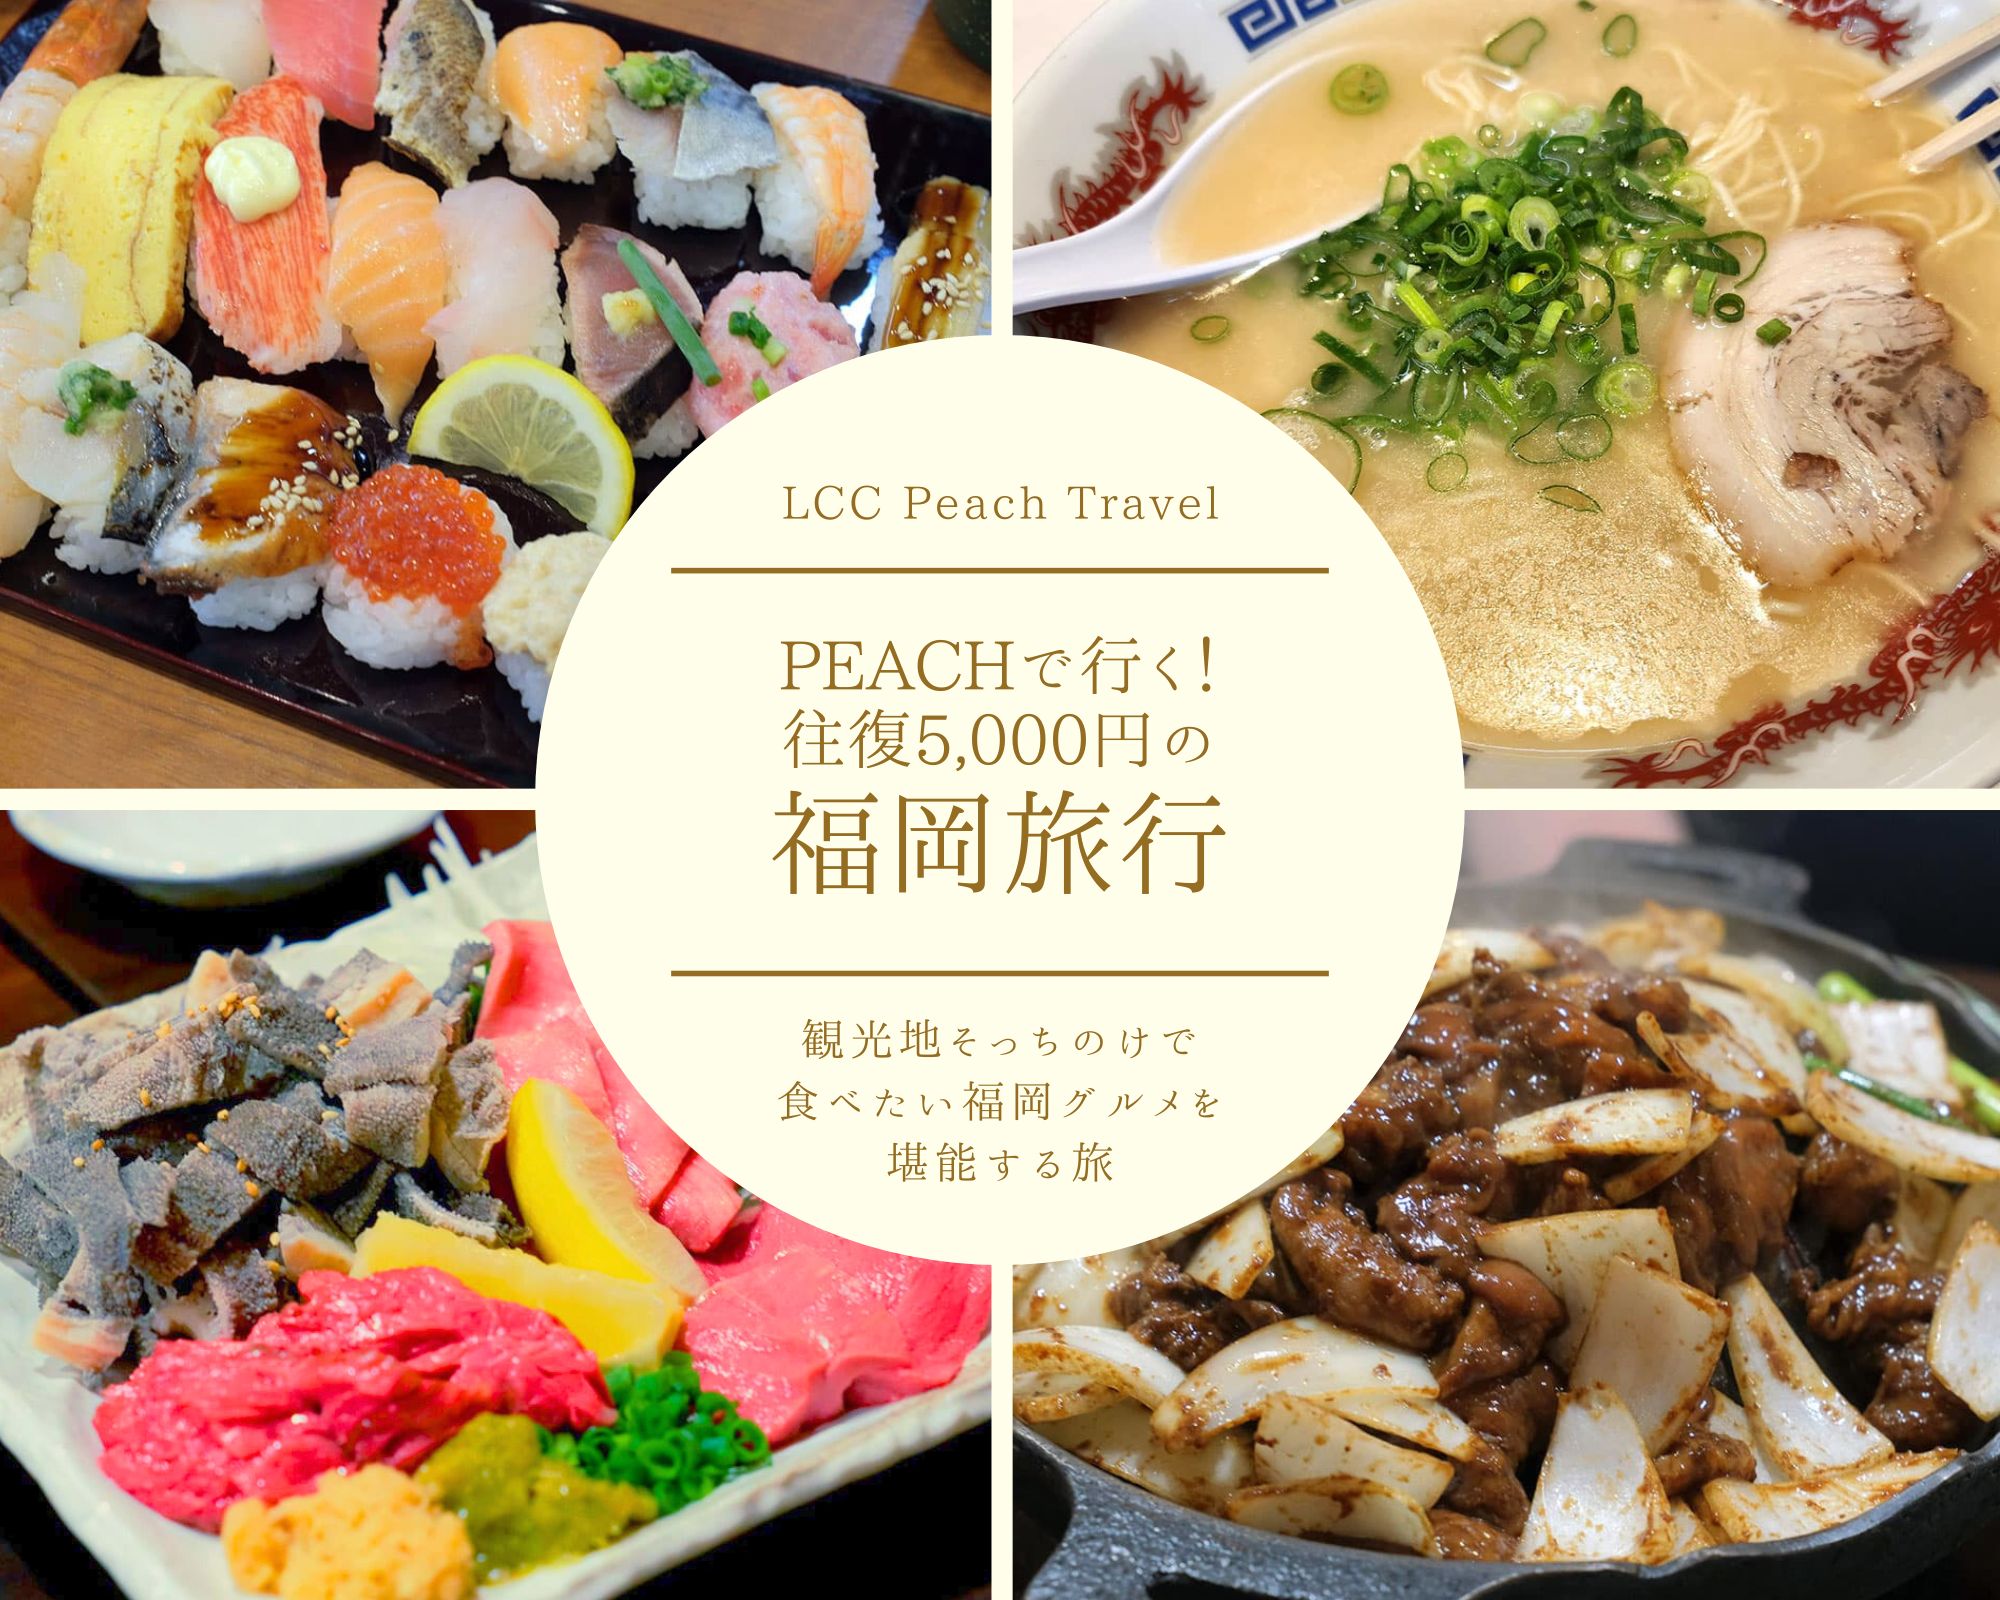 【1日目】LCCのPeachで行く！往復5,000円の福岡旅行。観光地そっちのけで食べたい福岡グルメを堪能する旅